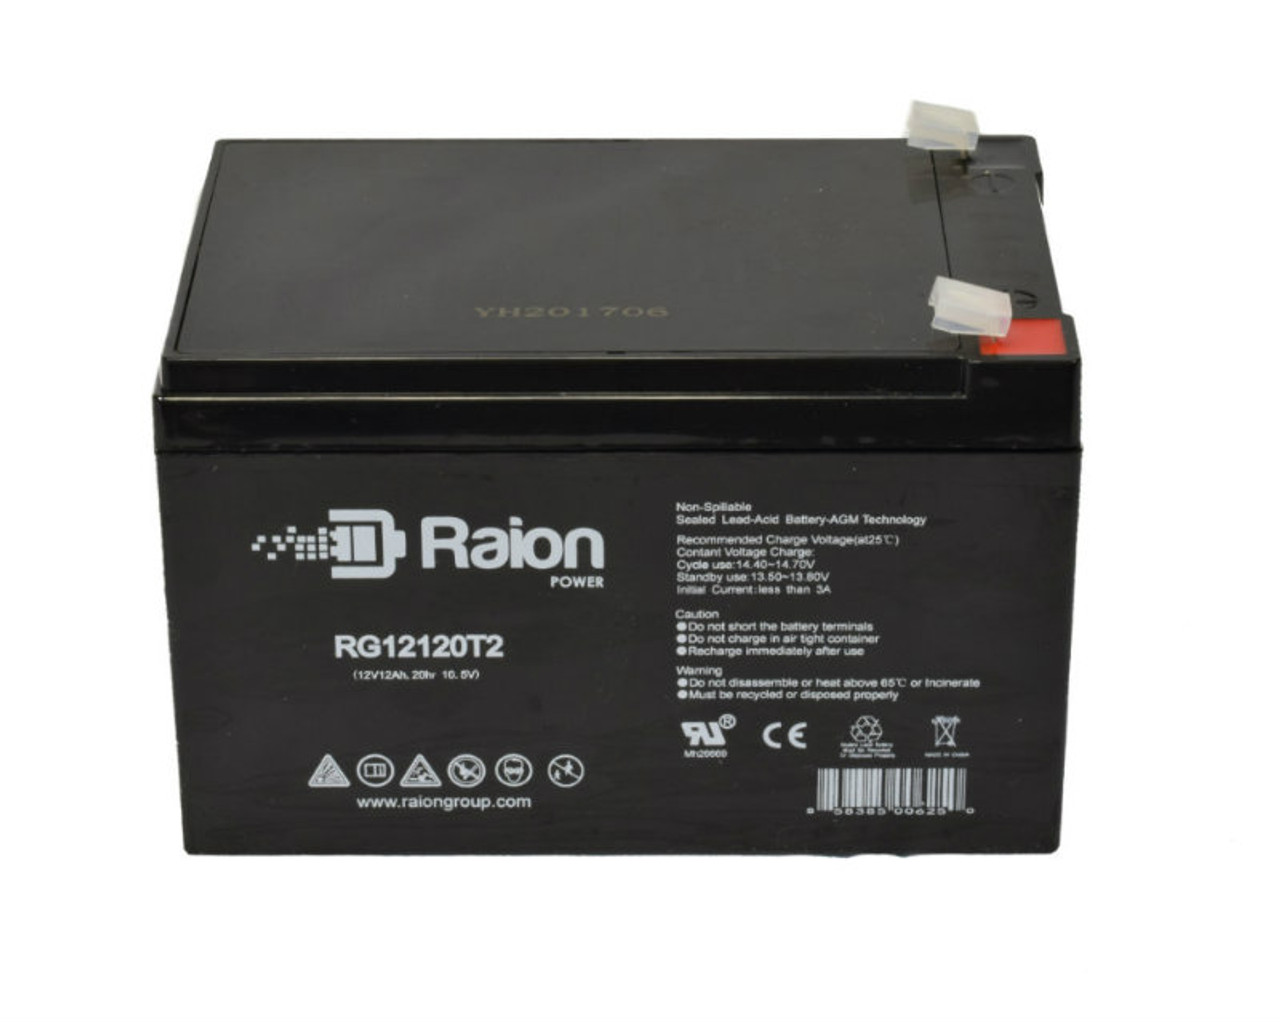 Raion Power RG12120T2 SLA Battery for Sonnenschein 95525